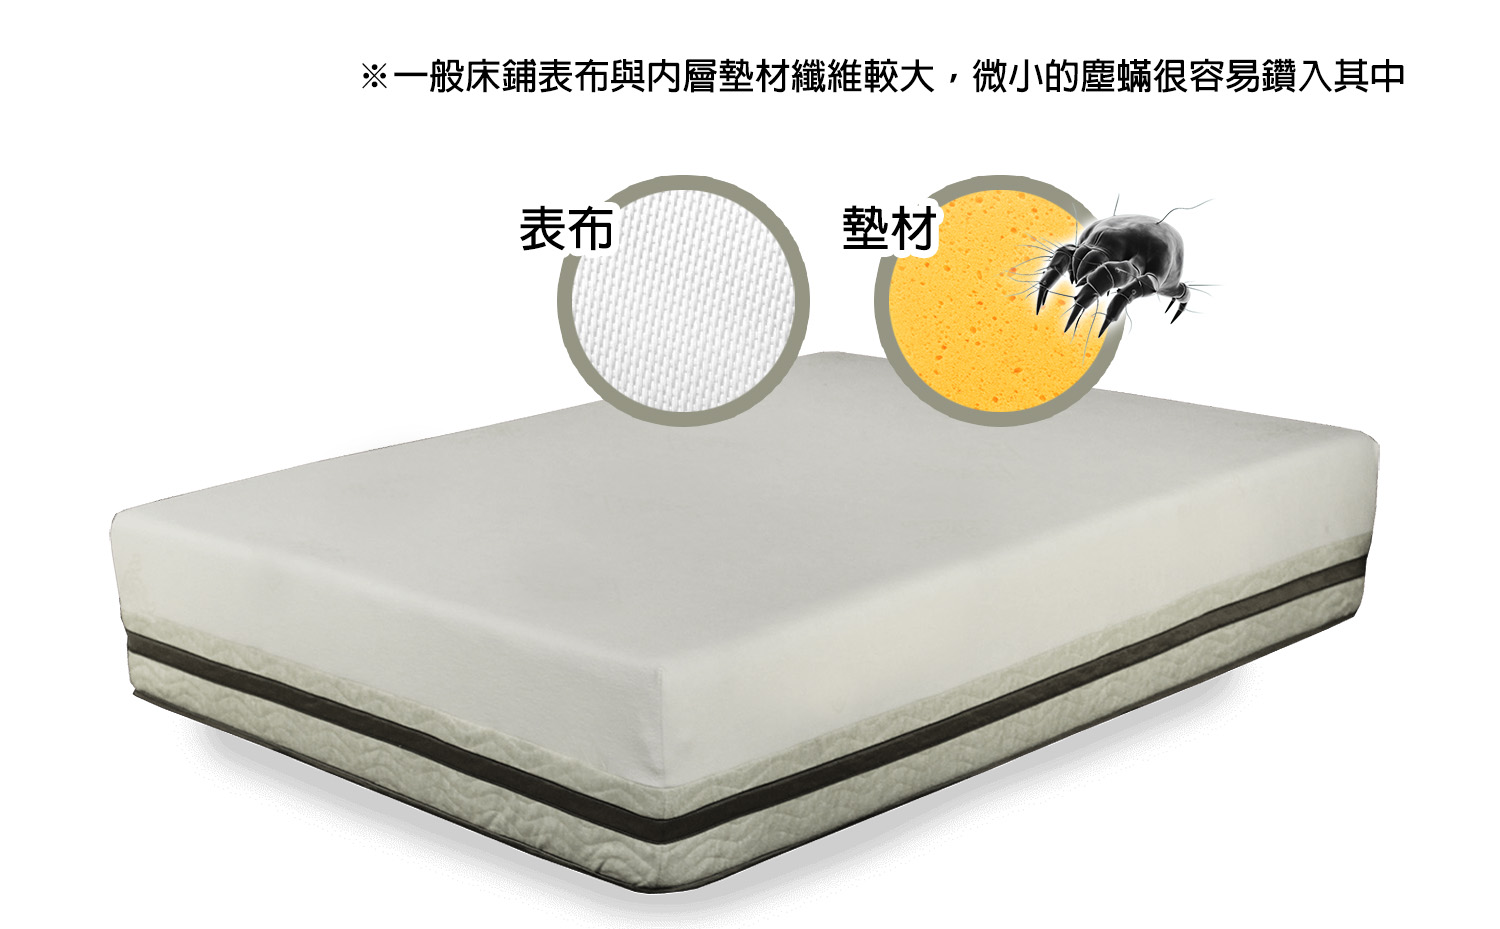 一般床鋪表布與內層墊材纖維較大，微小的塵蟎很容易鑽入其中;